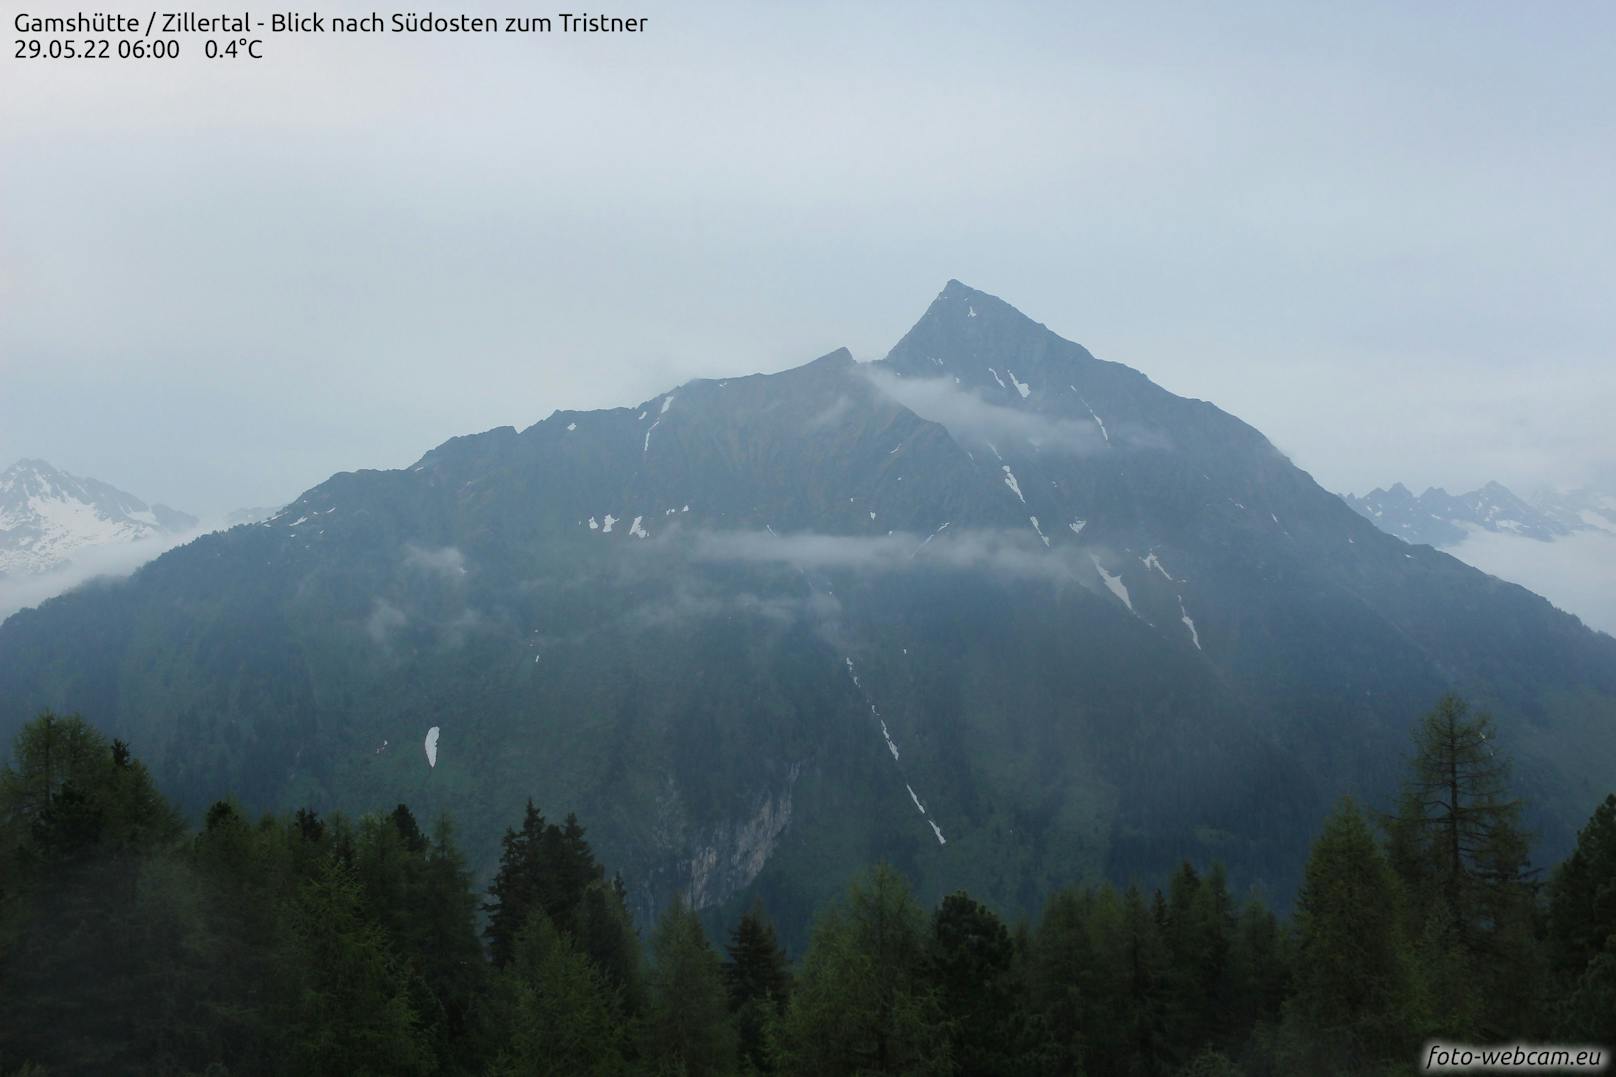 So sah der Blick von der Gamshütte nach Südosten zum Tristner am Vortag aus.